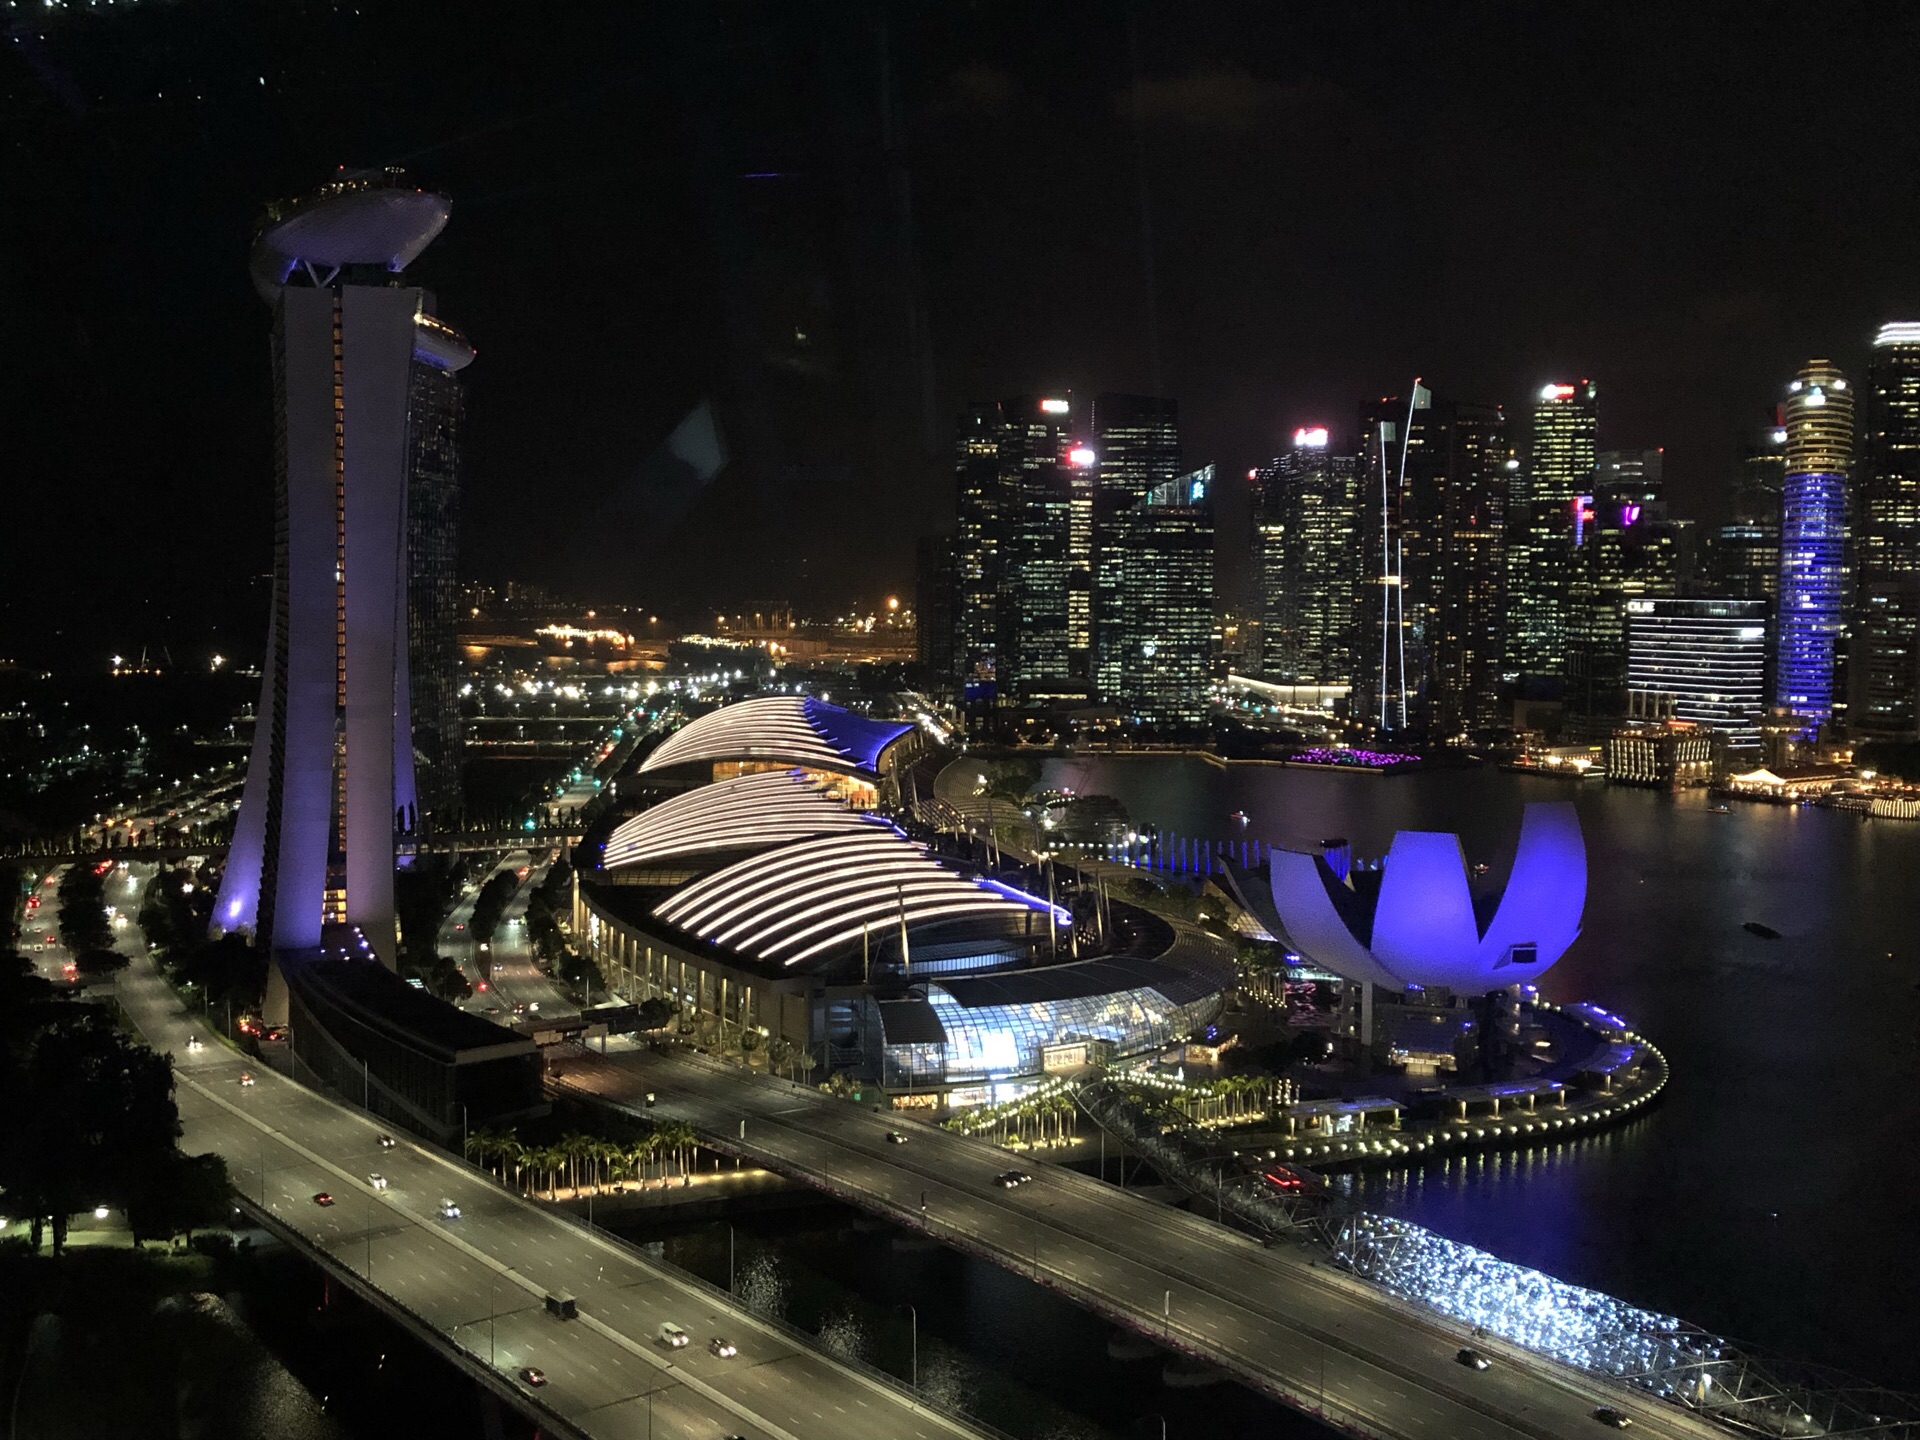 壁纸1024×768世界最大的摩天轮 新加坡摩天观景轮壁纸 新加坡摩天轮夜景桌面壁纸壁纸,世界最大的摩天轮新加坡摩天观景轮壁纸壁纸图片-人文 ...